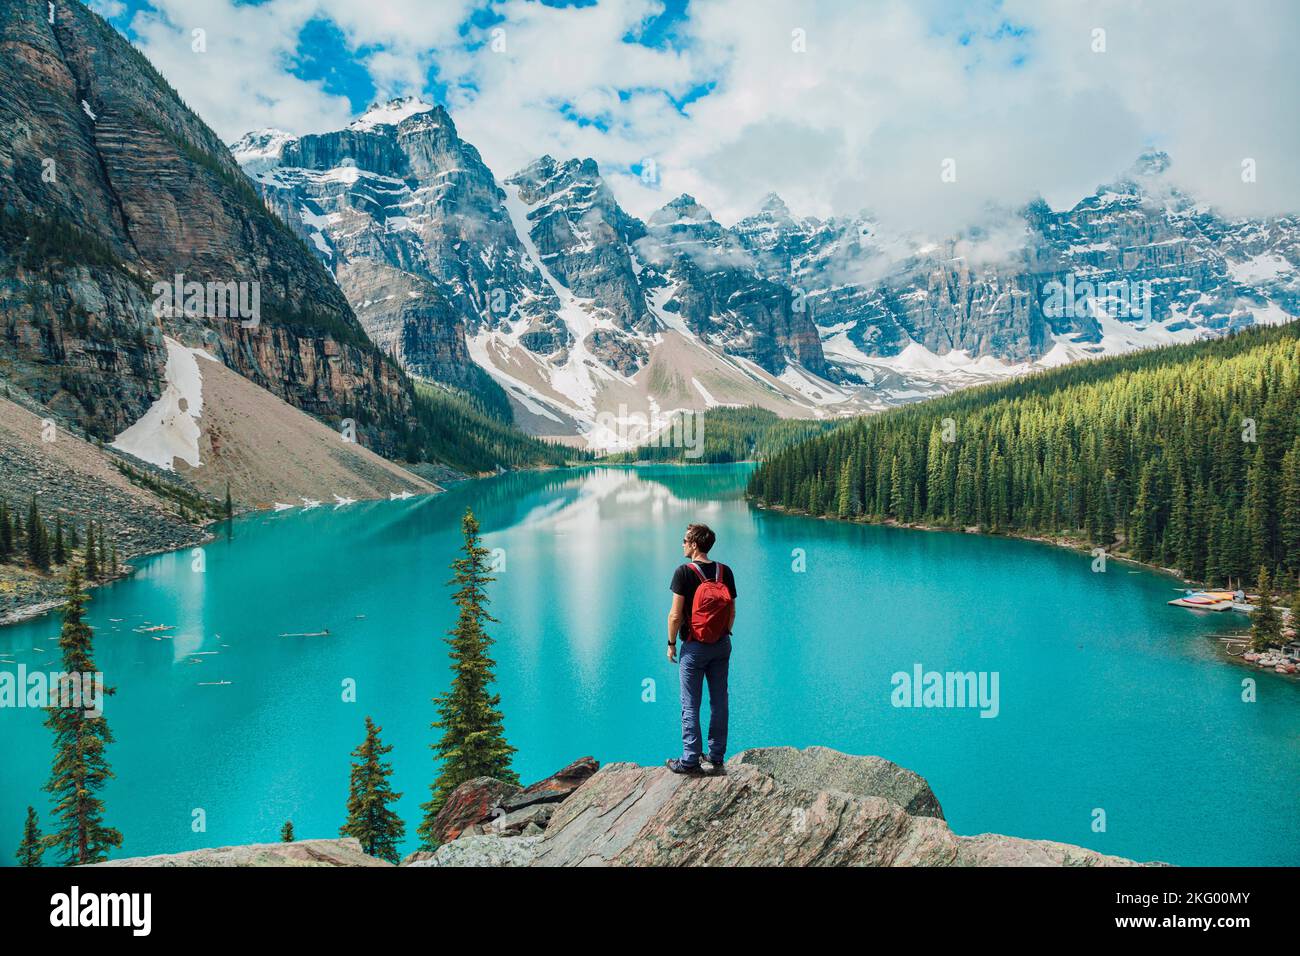 Kanadas Wandermann im Moraine Lake Banff National Park, Alberta. Kanadische rocky mountains Landschaft Menschen wandern mit Rucksack Lifestyle Stockfoto